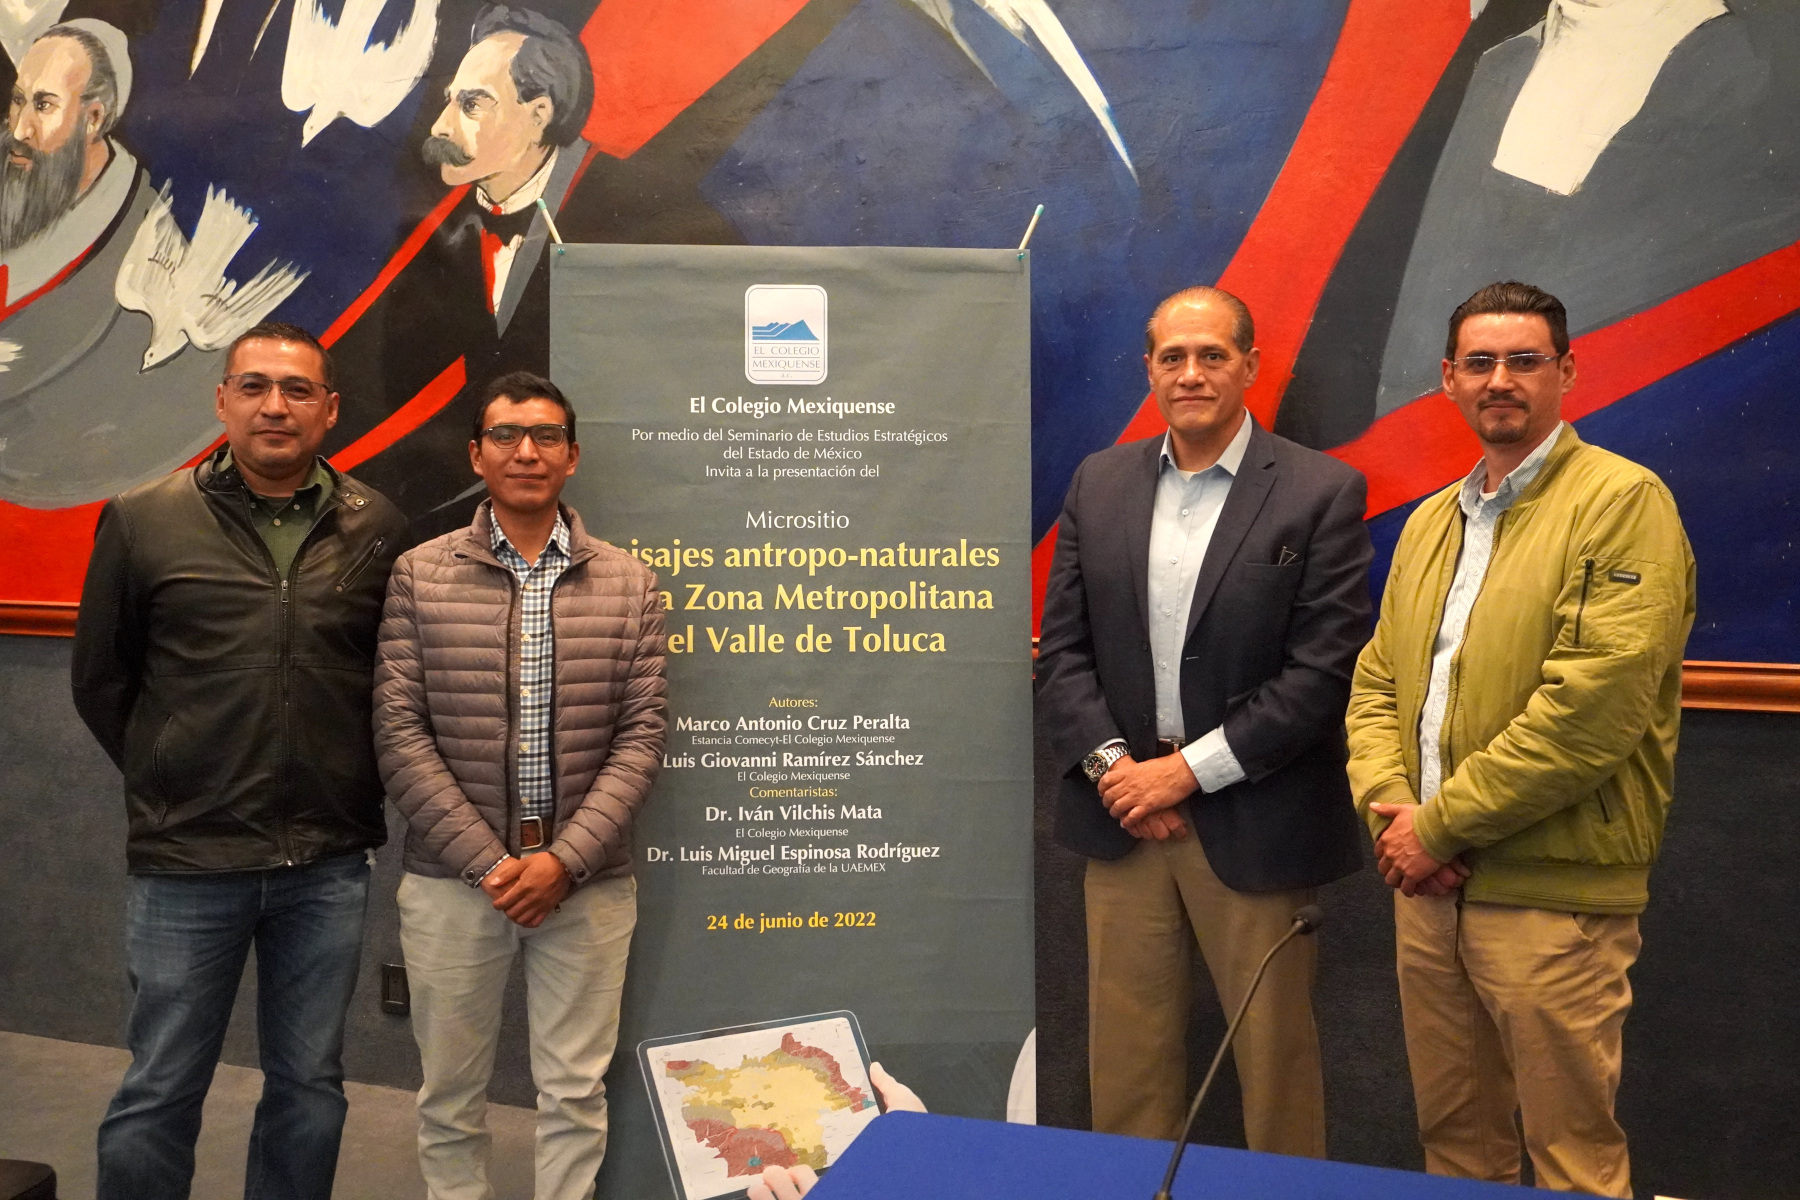 El Colegio Mexiquense abrió a la consulta micrositio sobre el efecto humano en el paisaje de la ZMVT